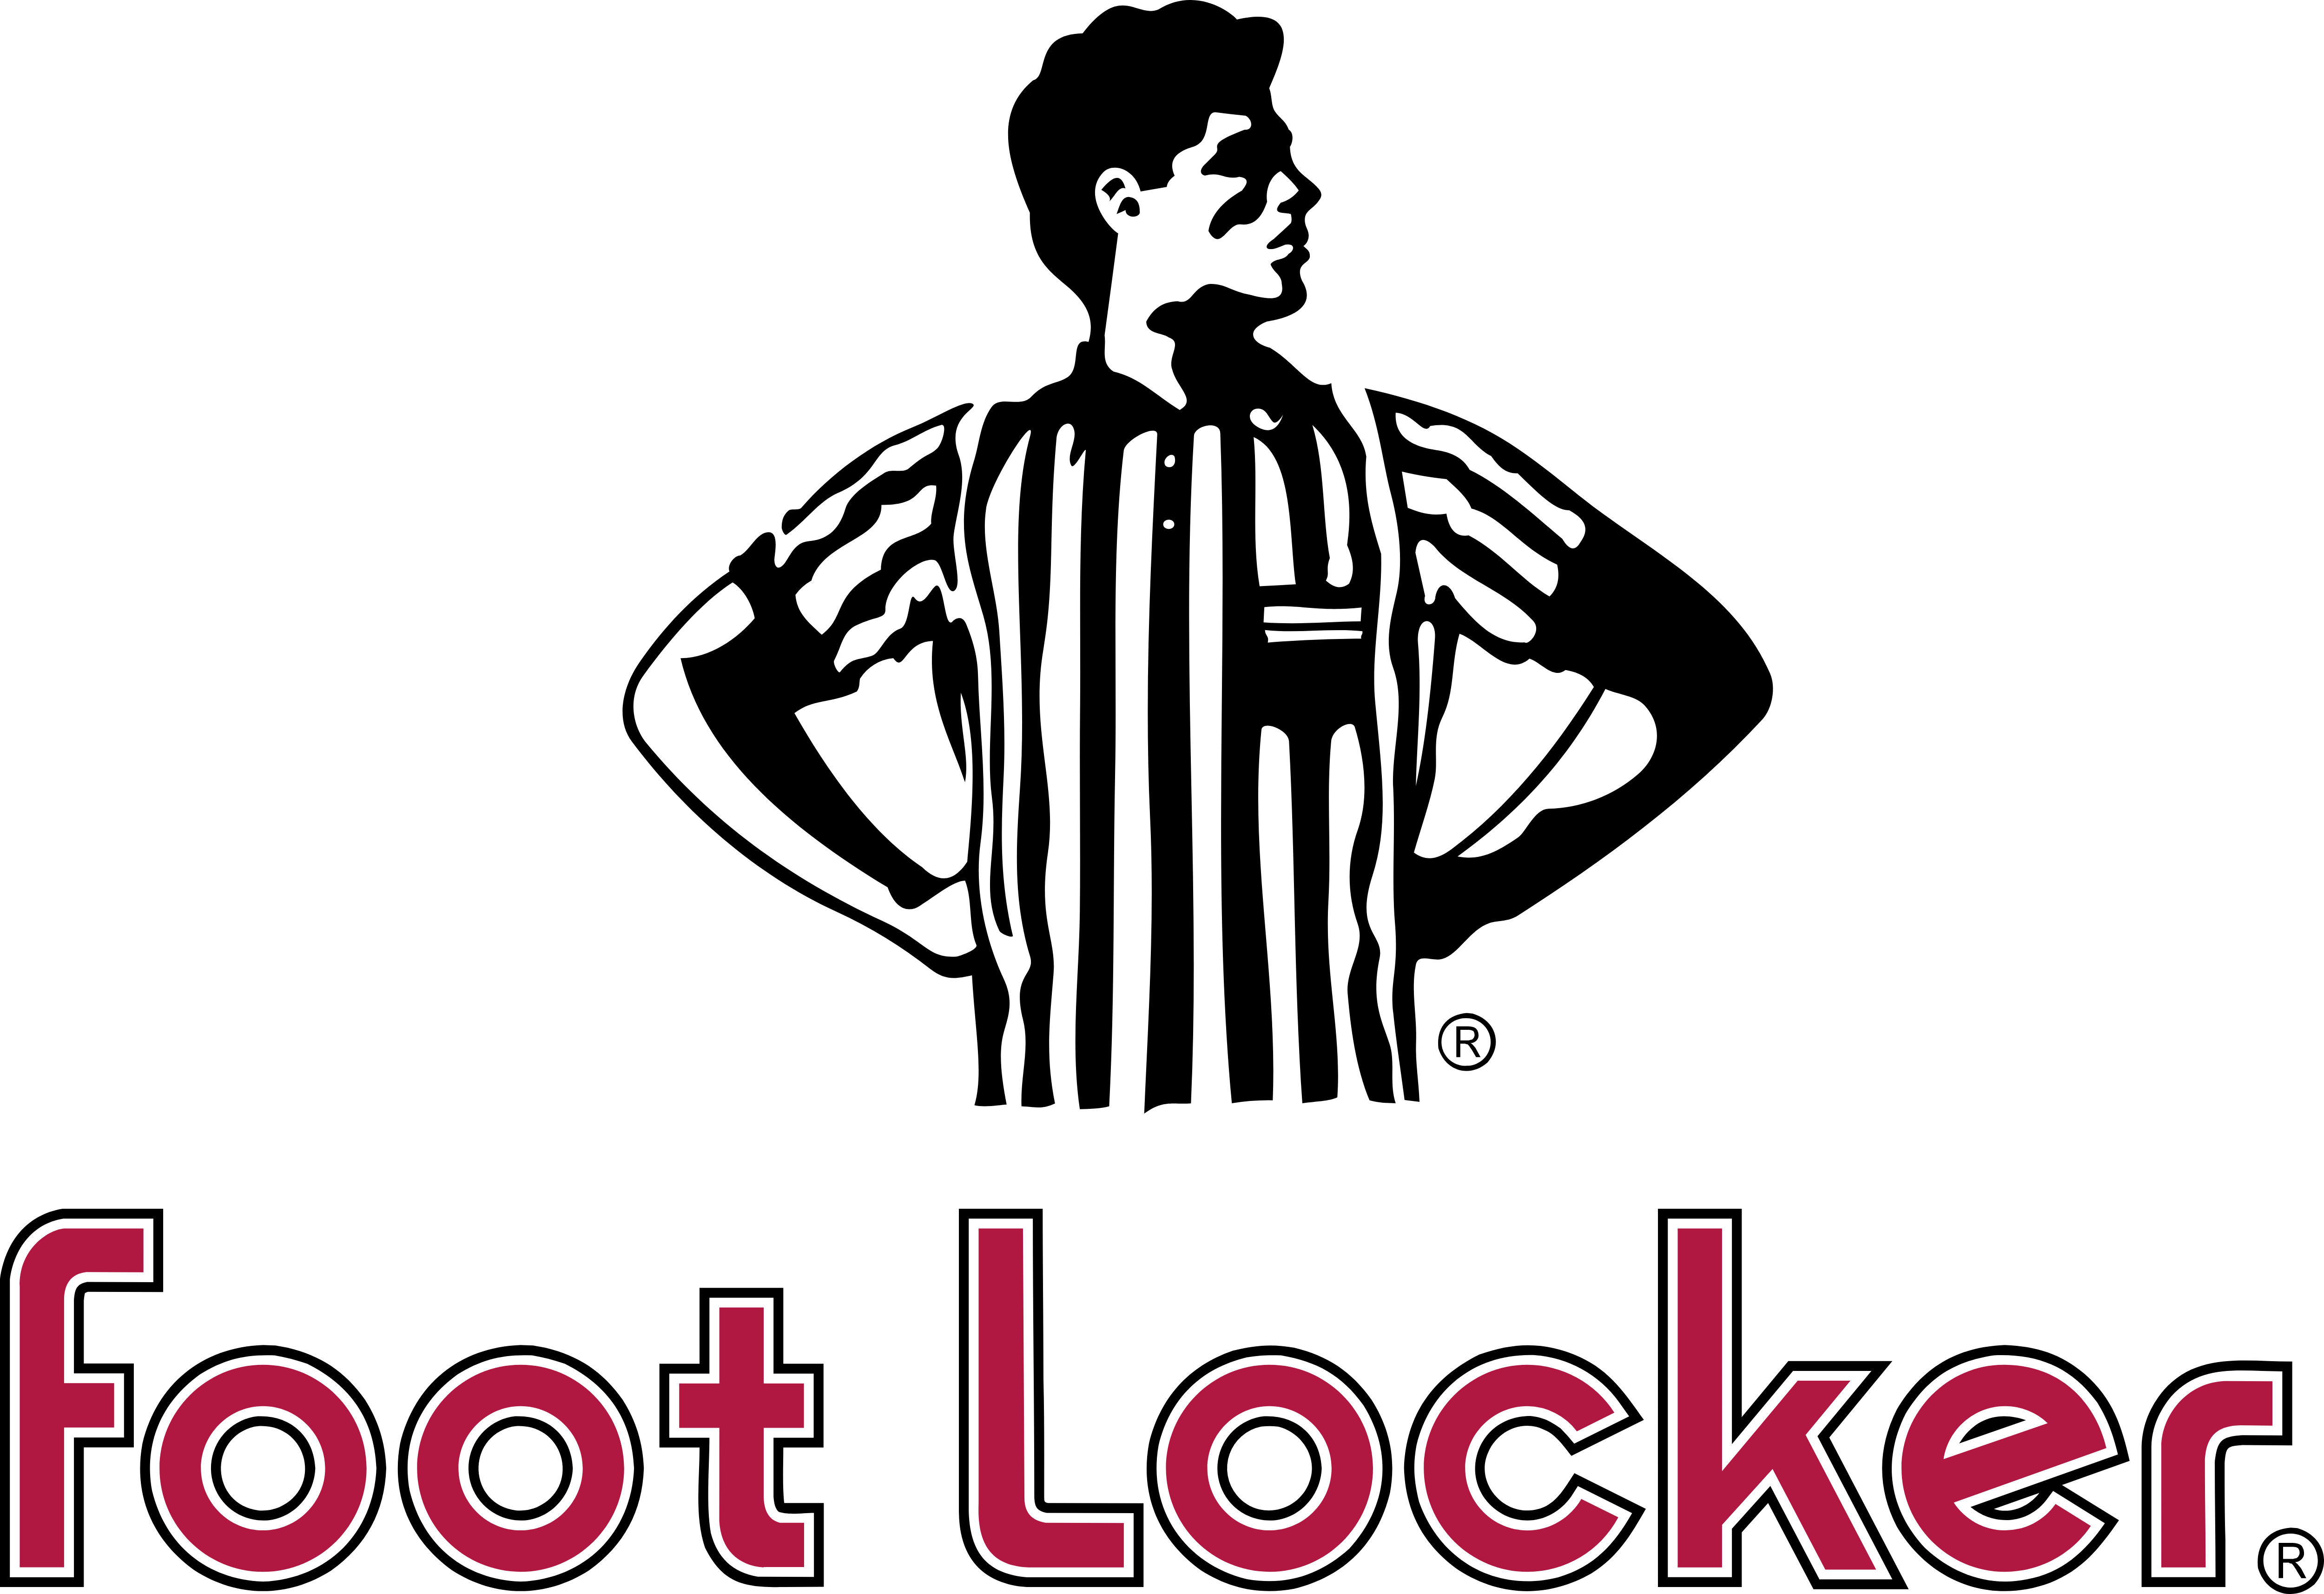 Footlocker Logo - Foot Locker – Logos Download